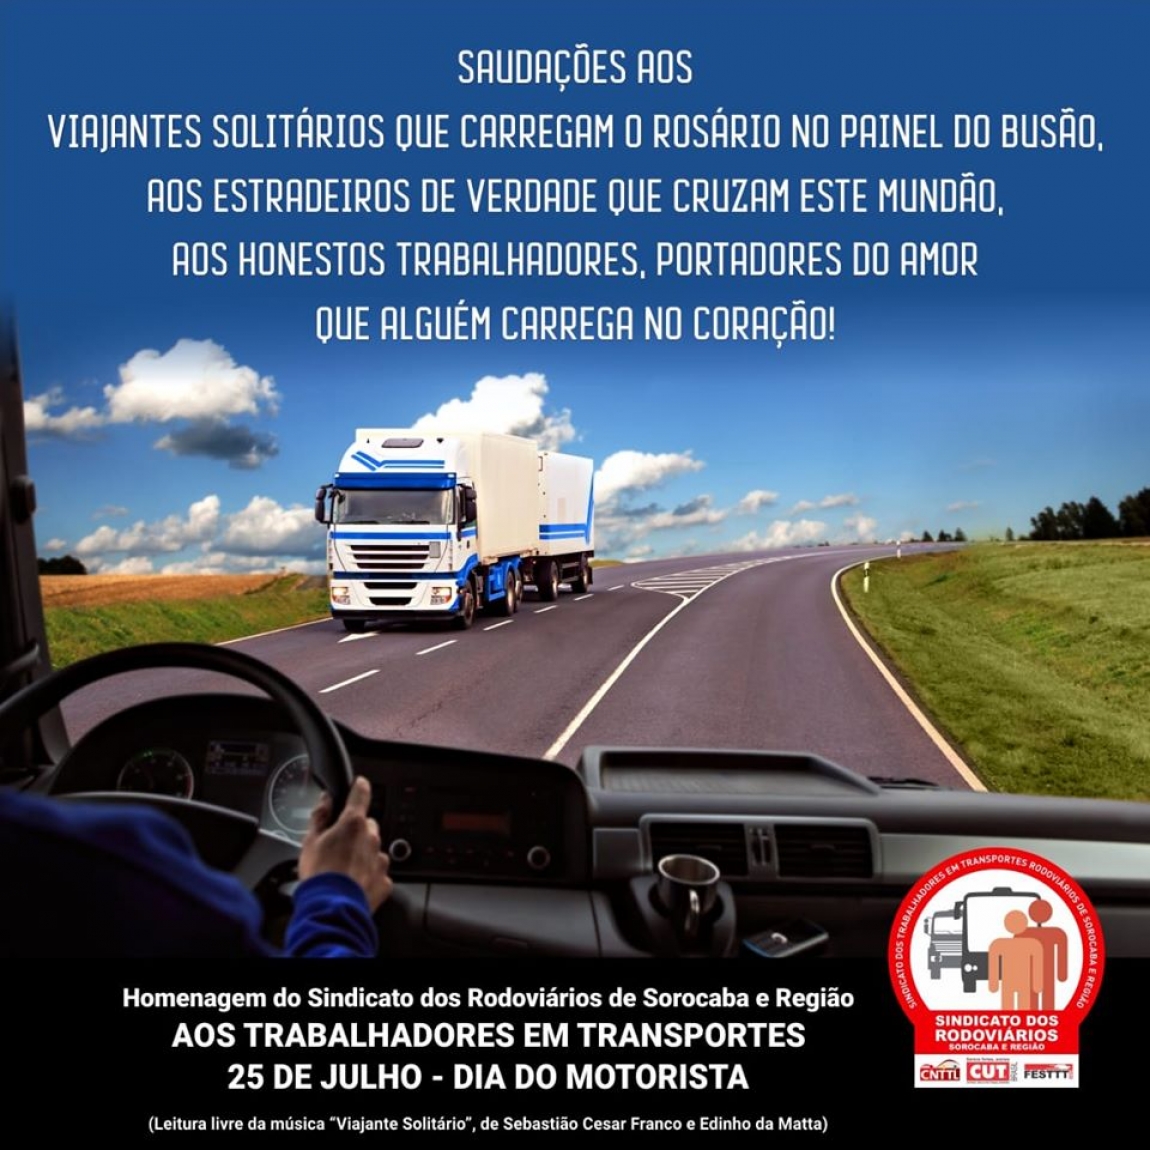 25/07/19 - Homenagens ao Dia do Motorista dos Sindicatos em todo o país -  CNTTL - Confederação Nacional Dos Trabalhadores Em Transportes e Logística